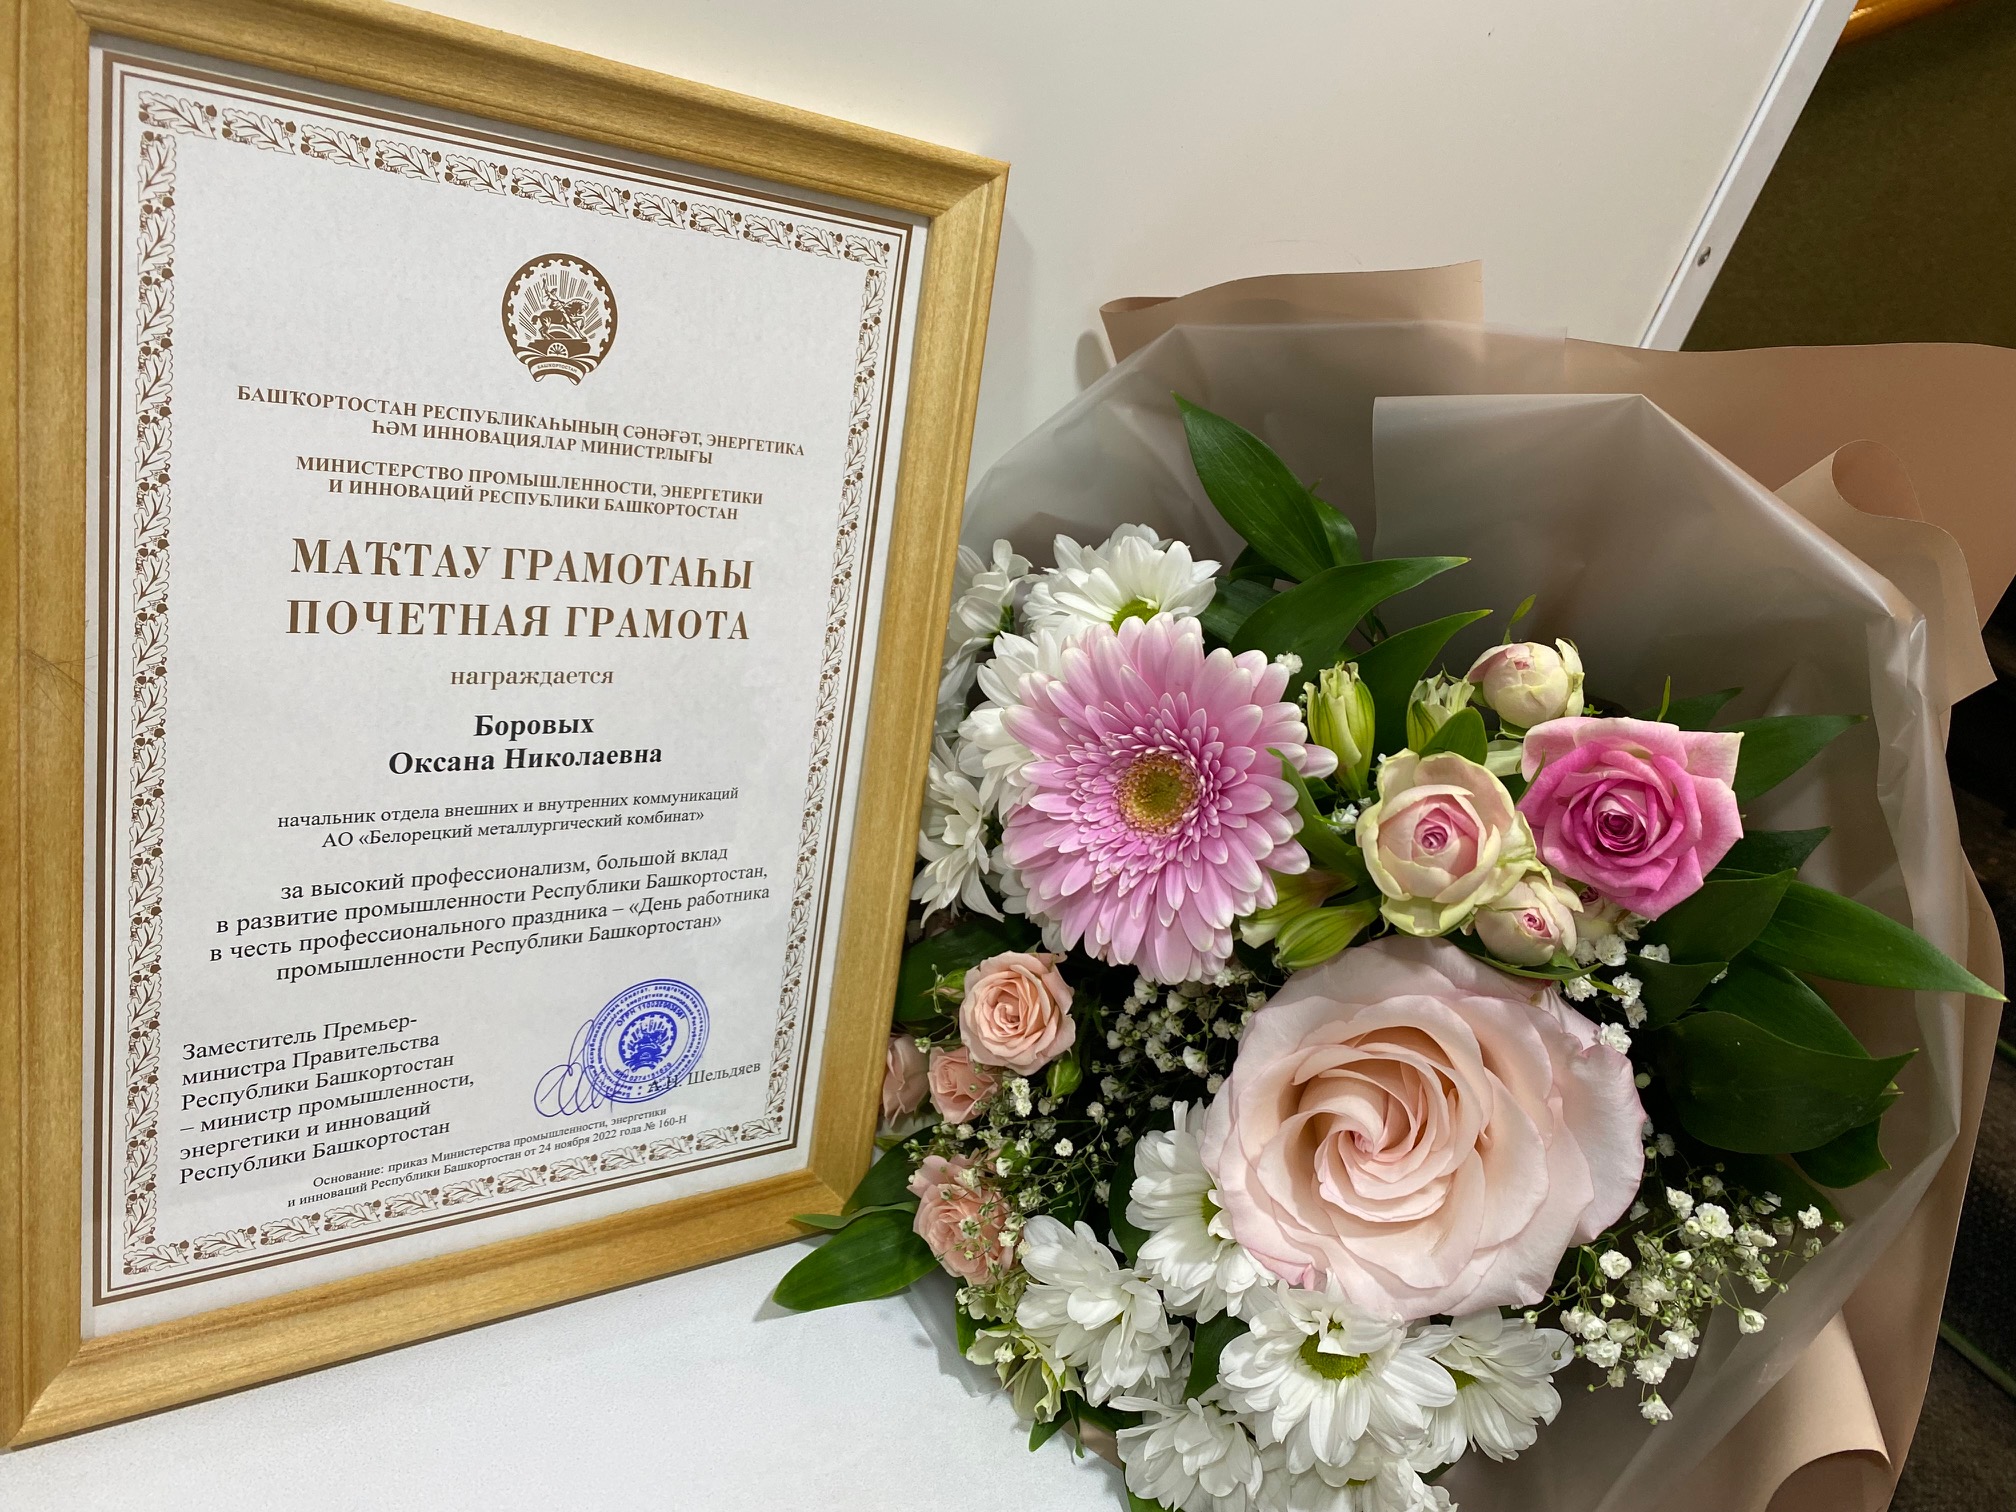 Сотруднику БМК вручена почетная грамота Министерства промышленности Башкортостана